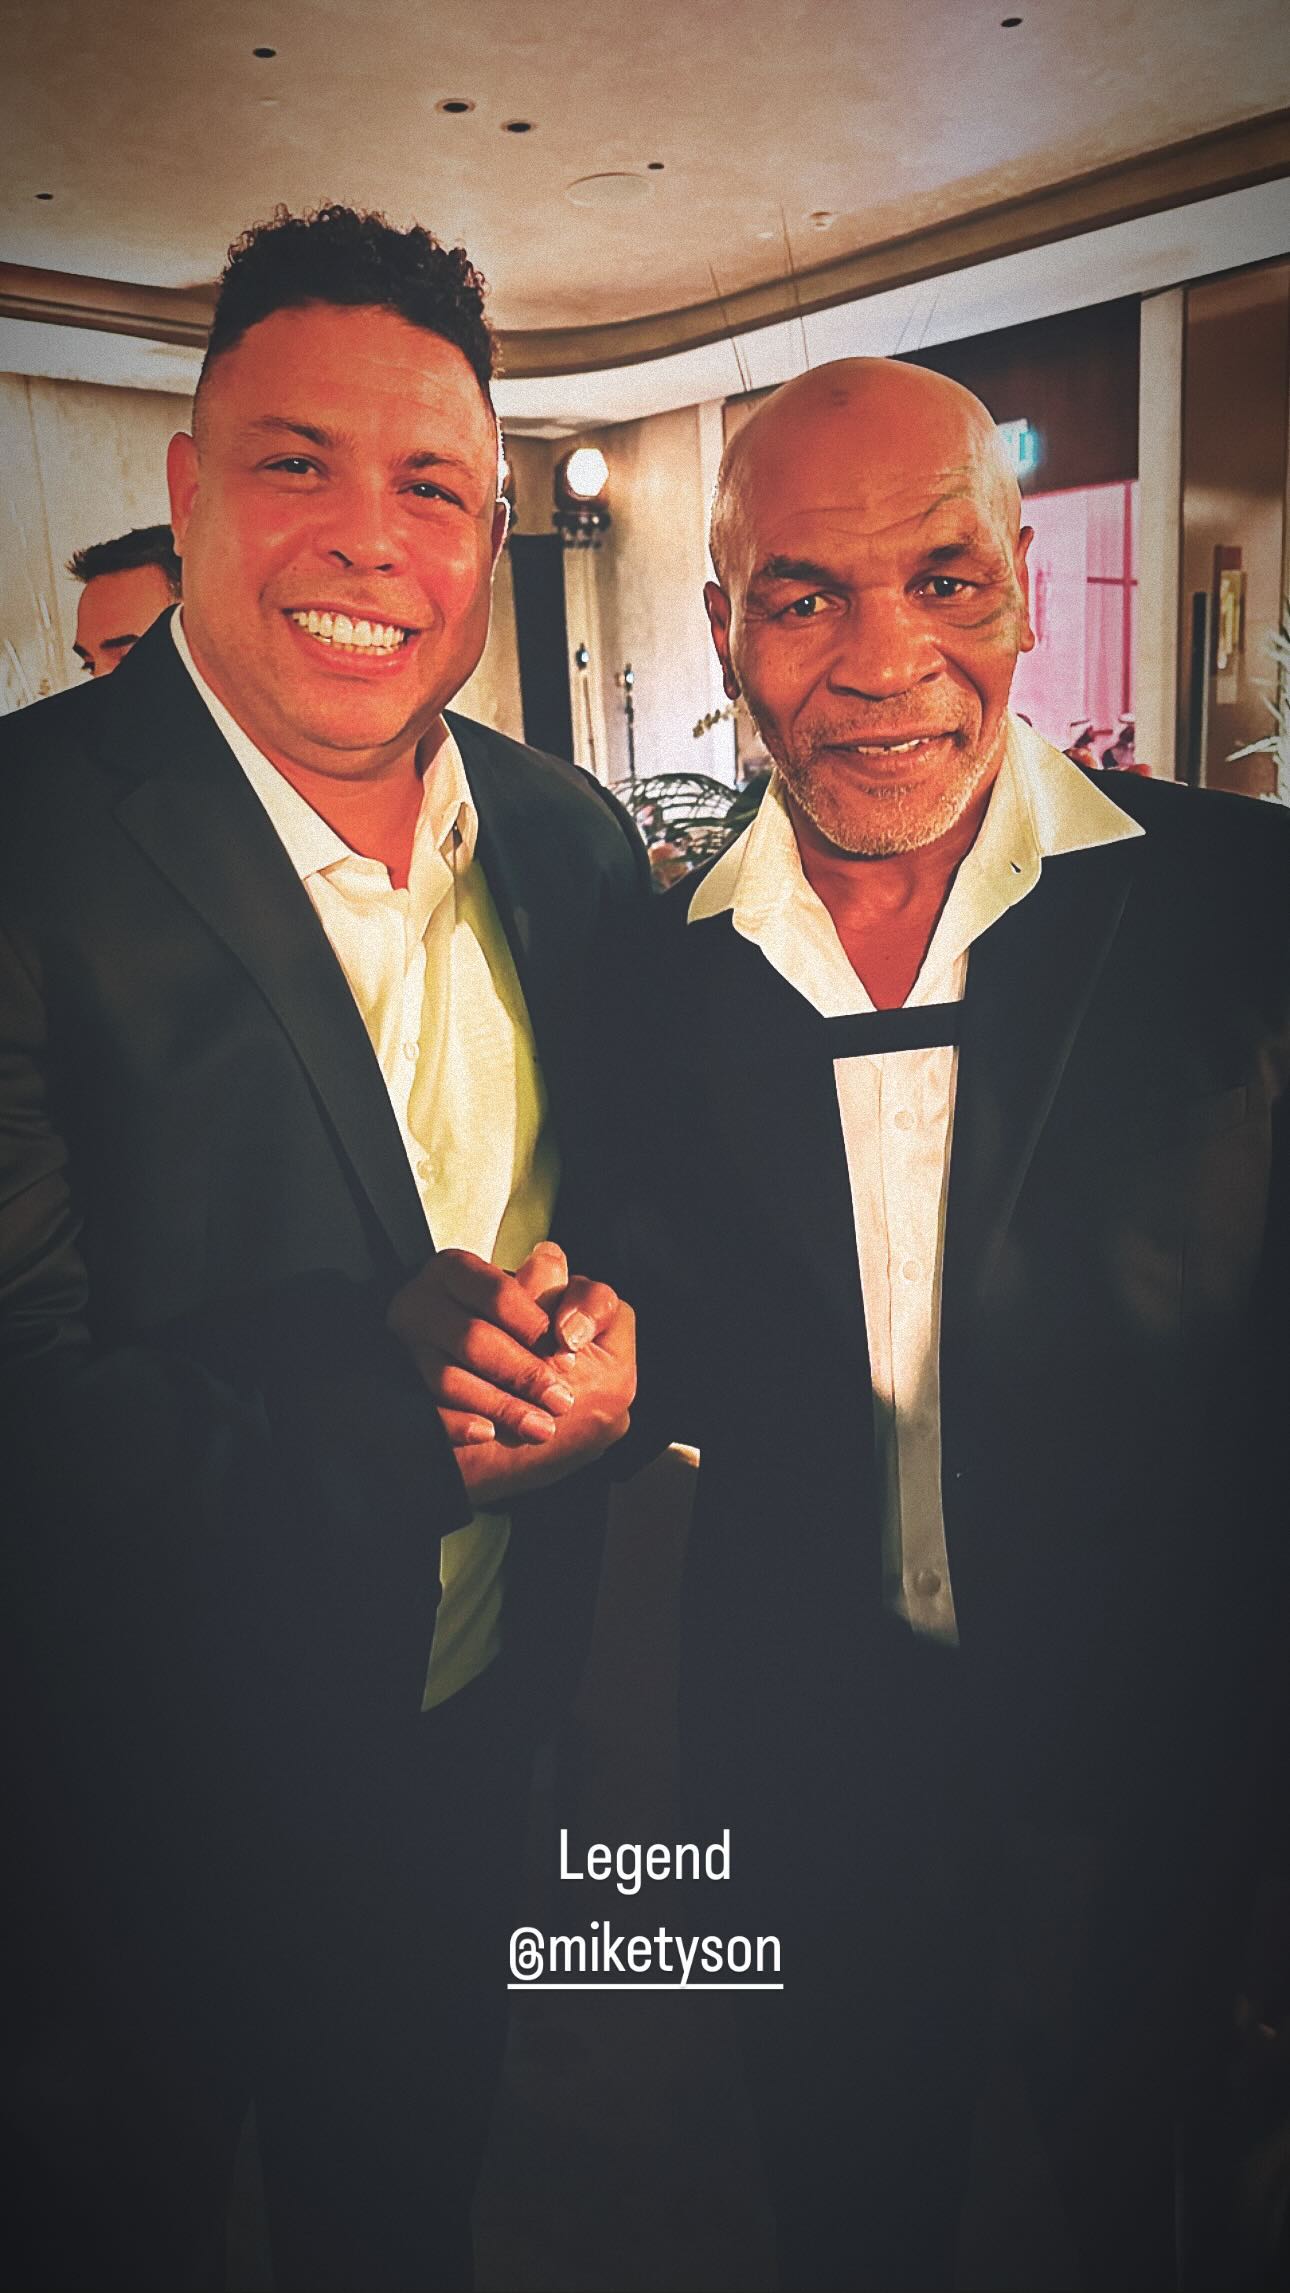 Iconic football star Ronaldo Nazario was thrilled to meet Tyson